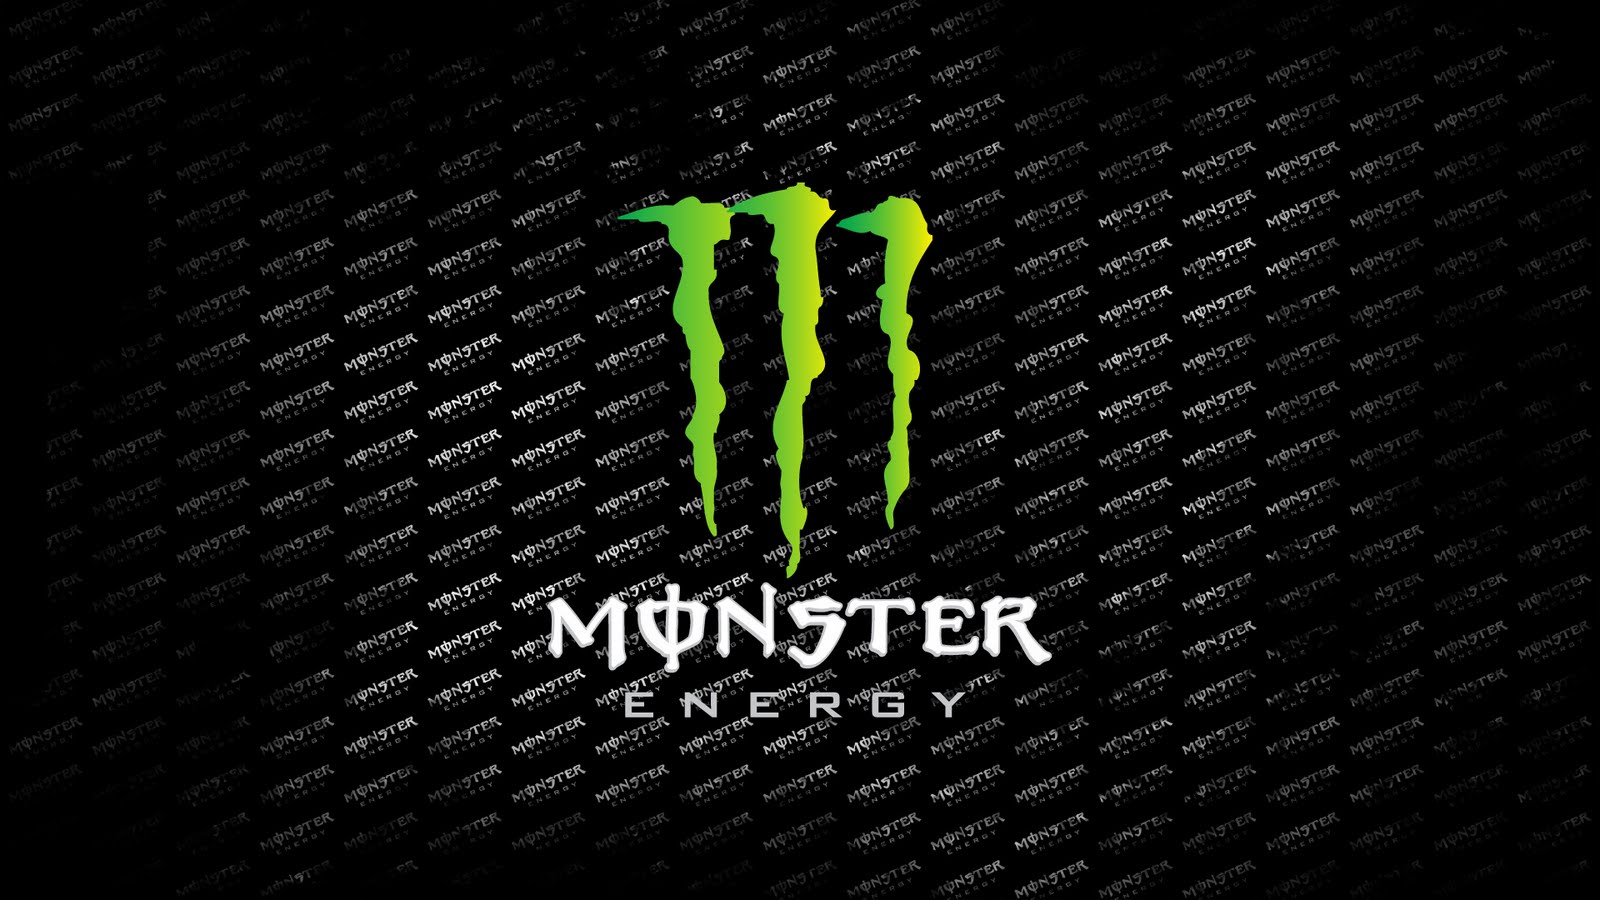 wallpapers monster energy logo hd wallpaper monster energy hd 1600x900